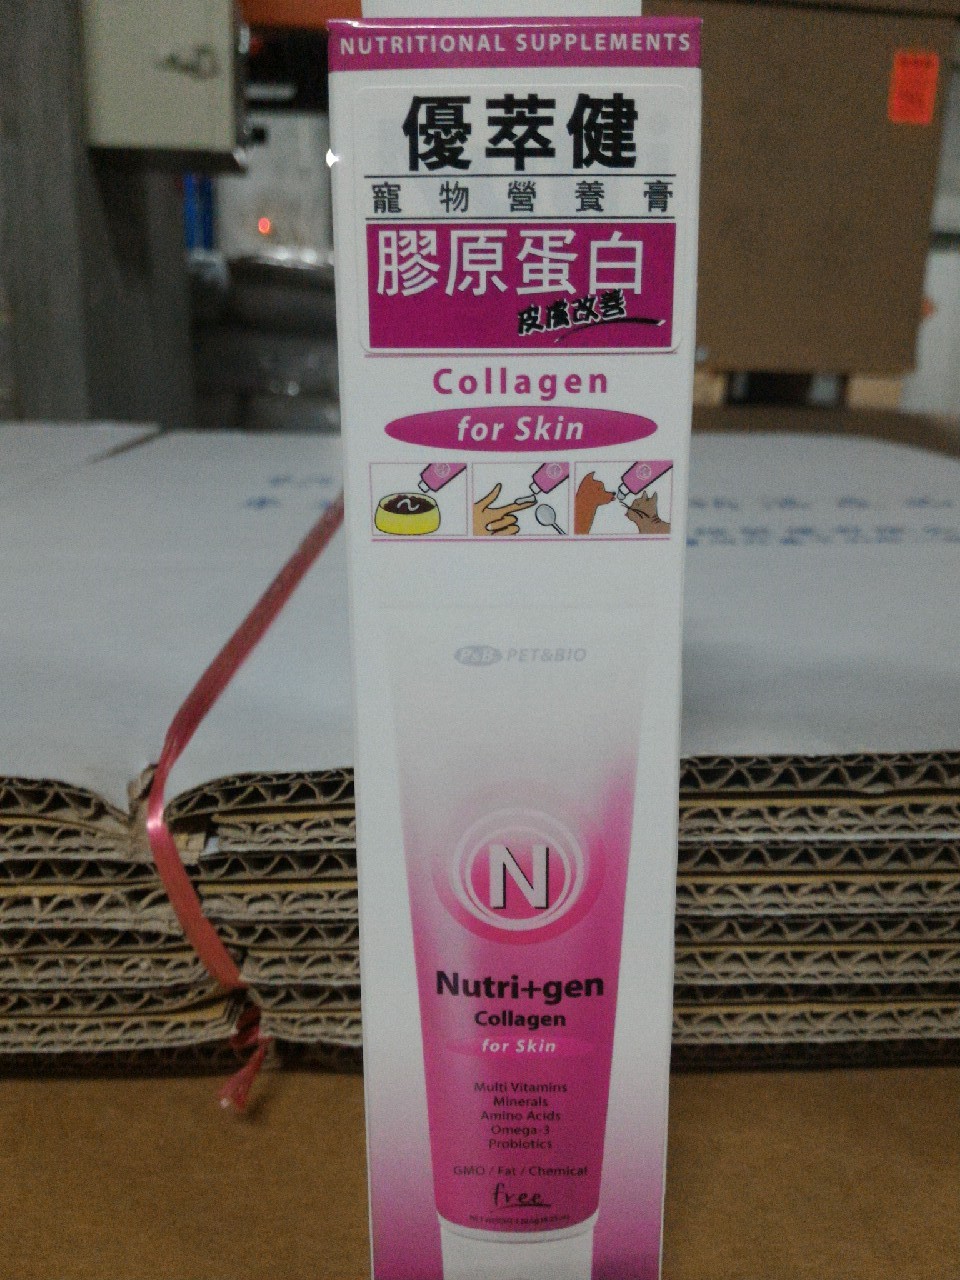 優萃健寵物營養膏-膠原蛋白
Nutri+gen Collagen